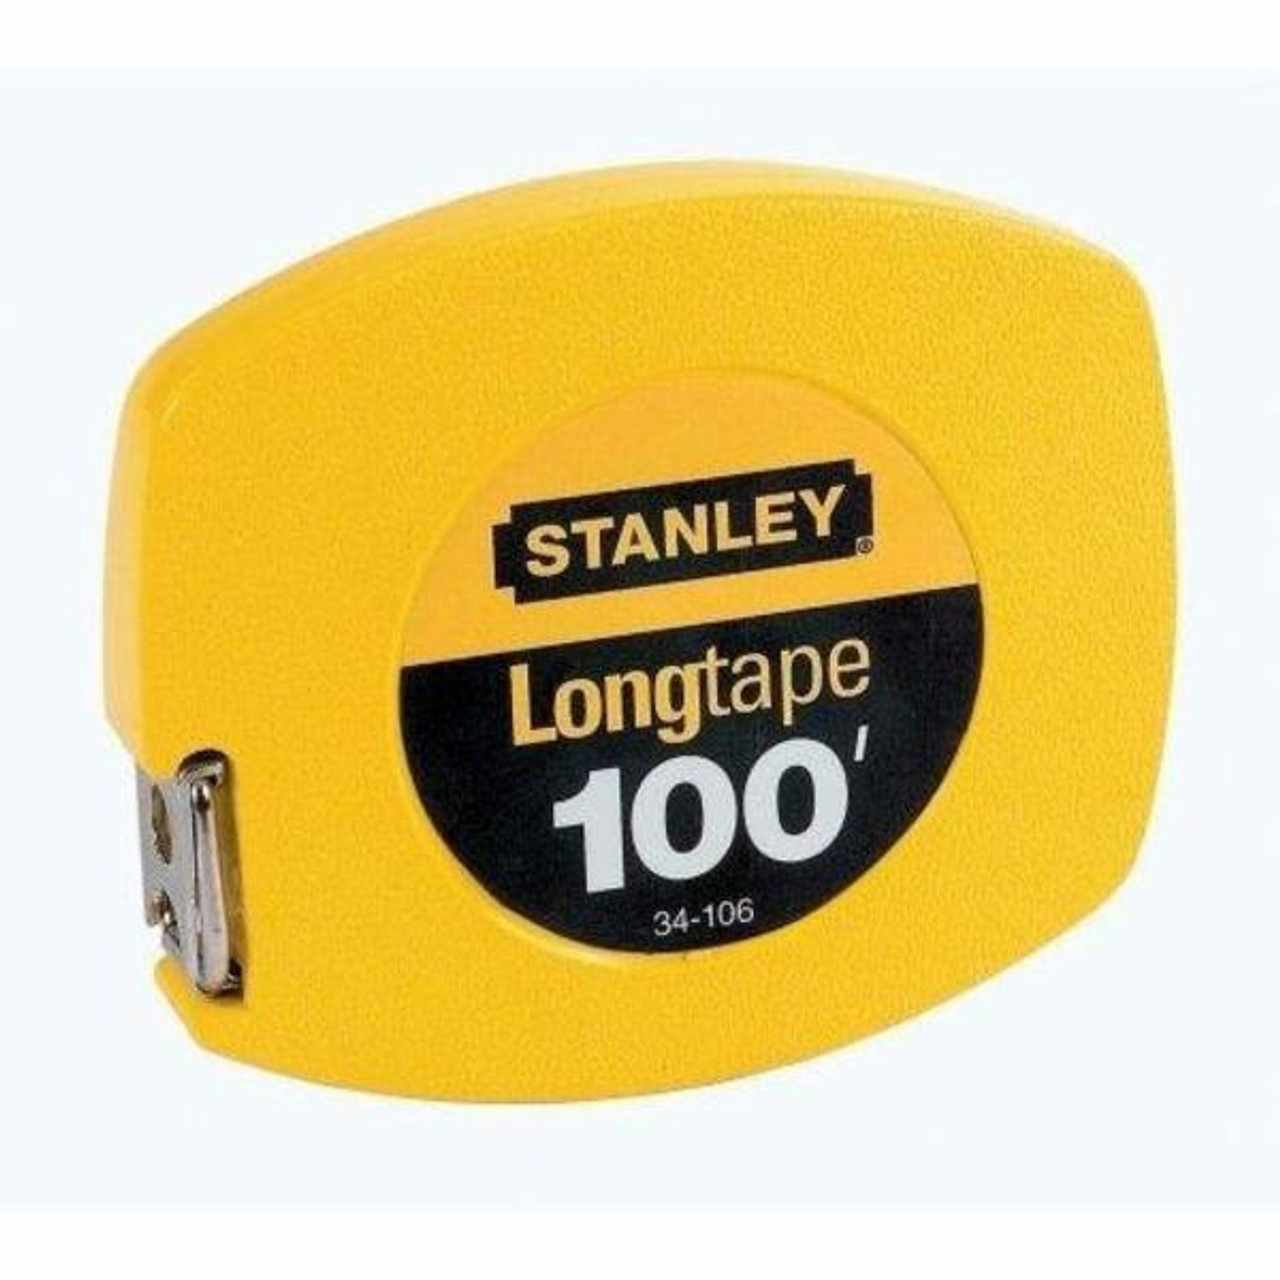 STANLEY 30-495 16-Foot Tape Measure 